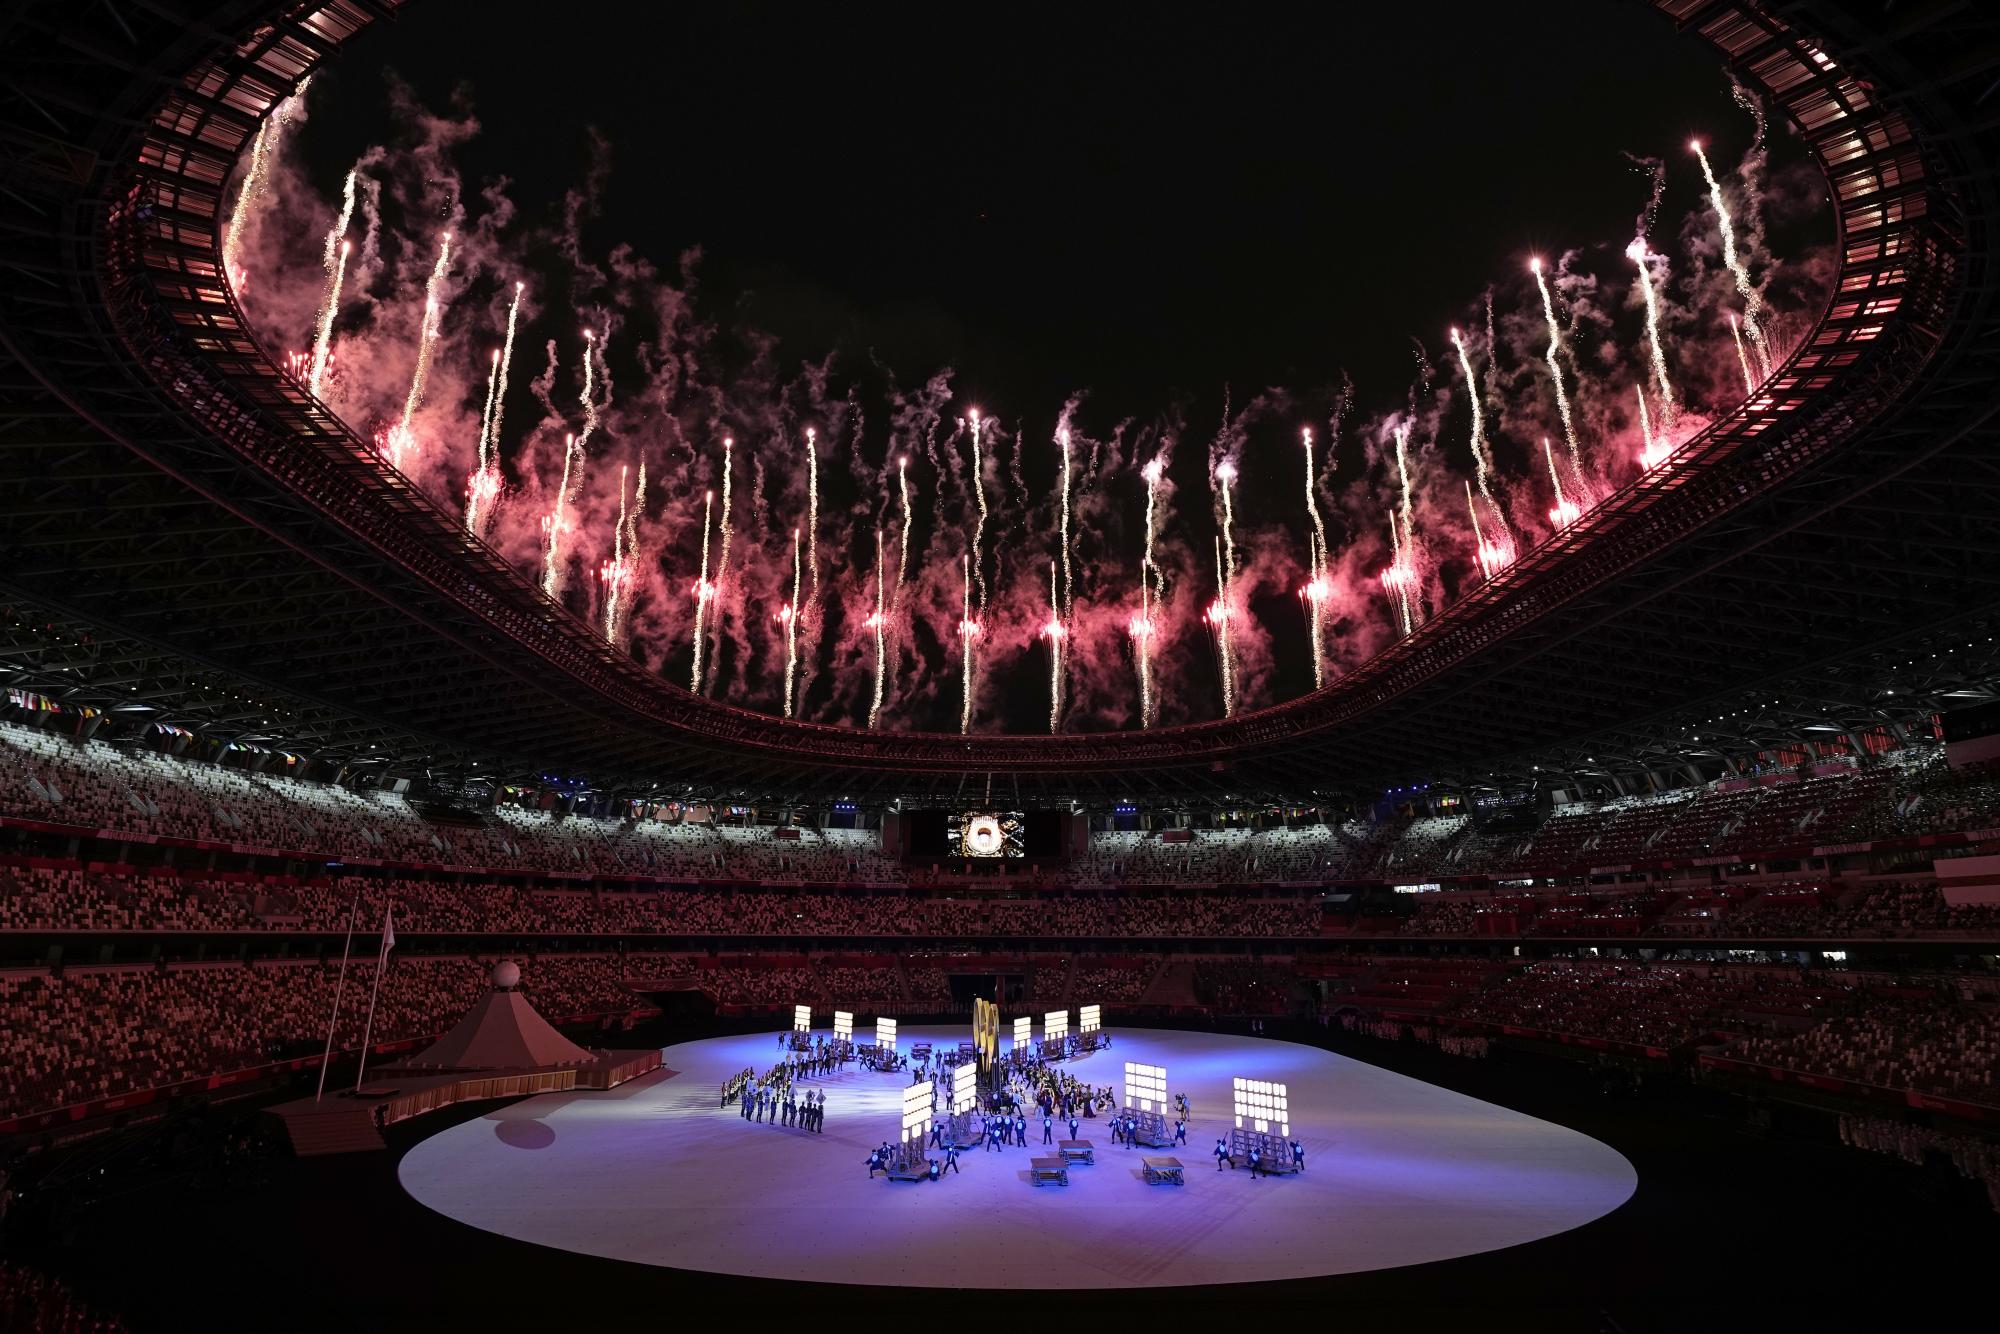 Los fuegos artificiales estallan durante la ceremonia de apertura en el Estadio Olímpico de los Juegos Olímpicos de Verano de 2020, el viernes 23 de julio de 2021, en Tokio, Japón. (Foto AP / David J. Phillip)